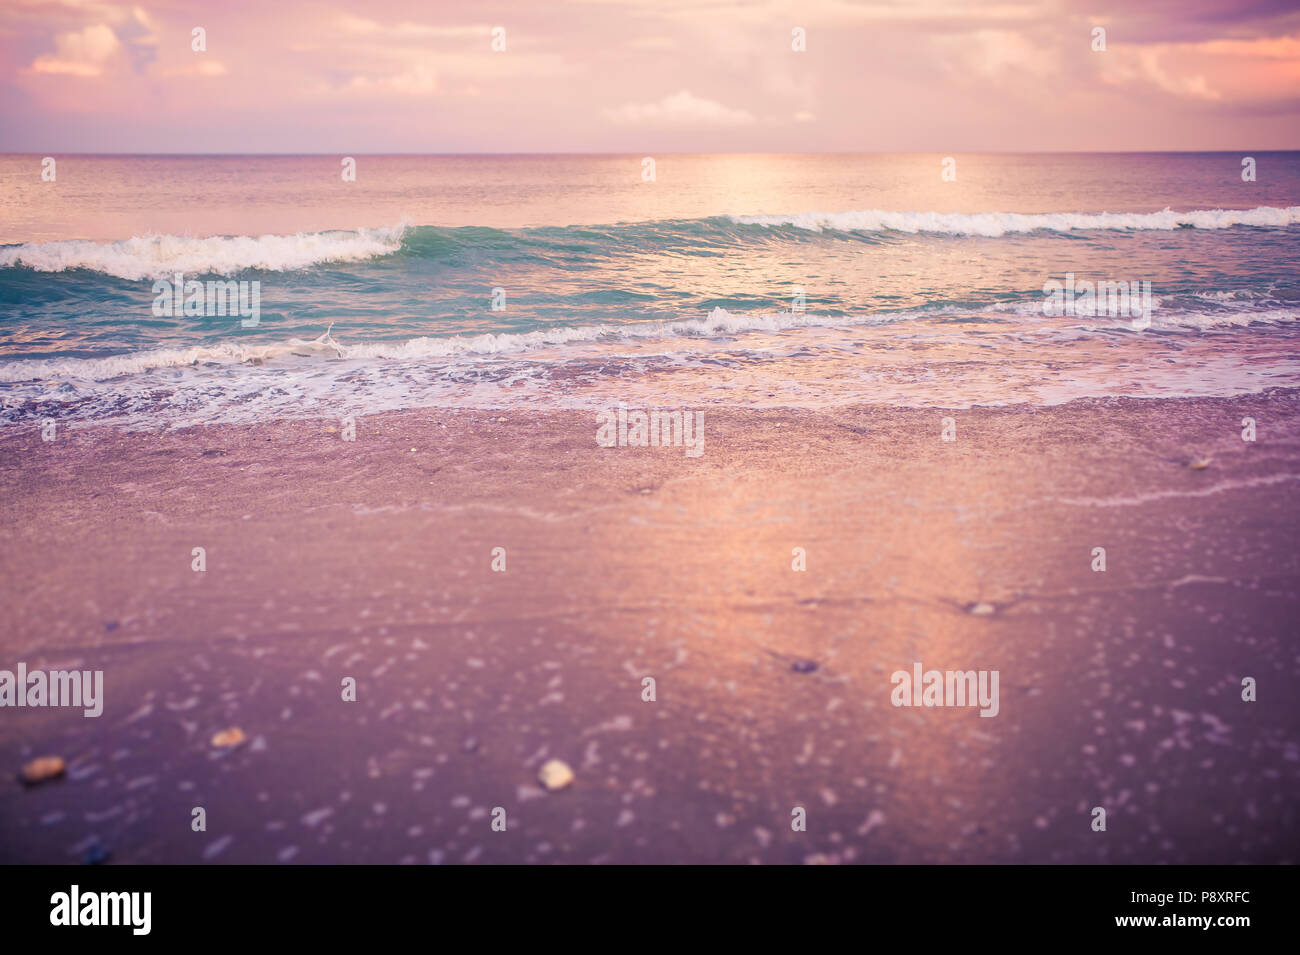 Rose, violet, rose et or crépuscule coucher de soleil sur la plage avec un sable teinté de rose et d'une rive de gros plan détaillé, les vagues de l'océan bleu turquoise brillant Banque D'Images